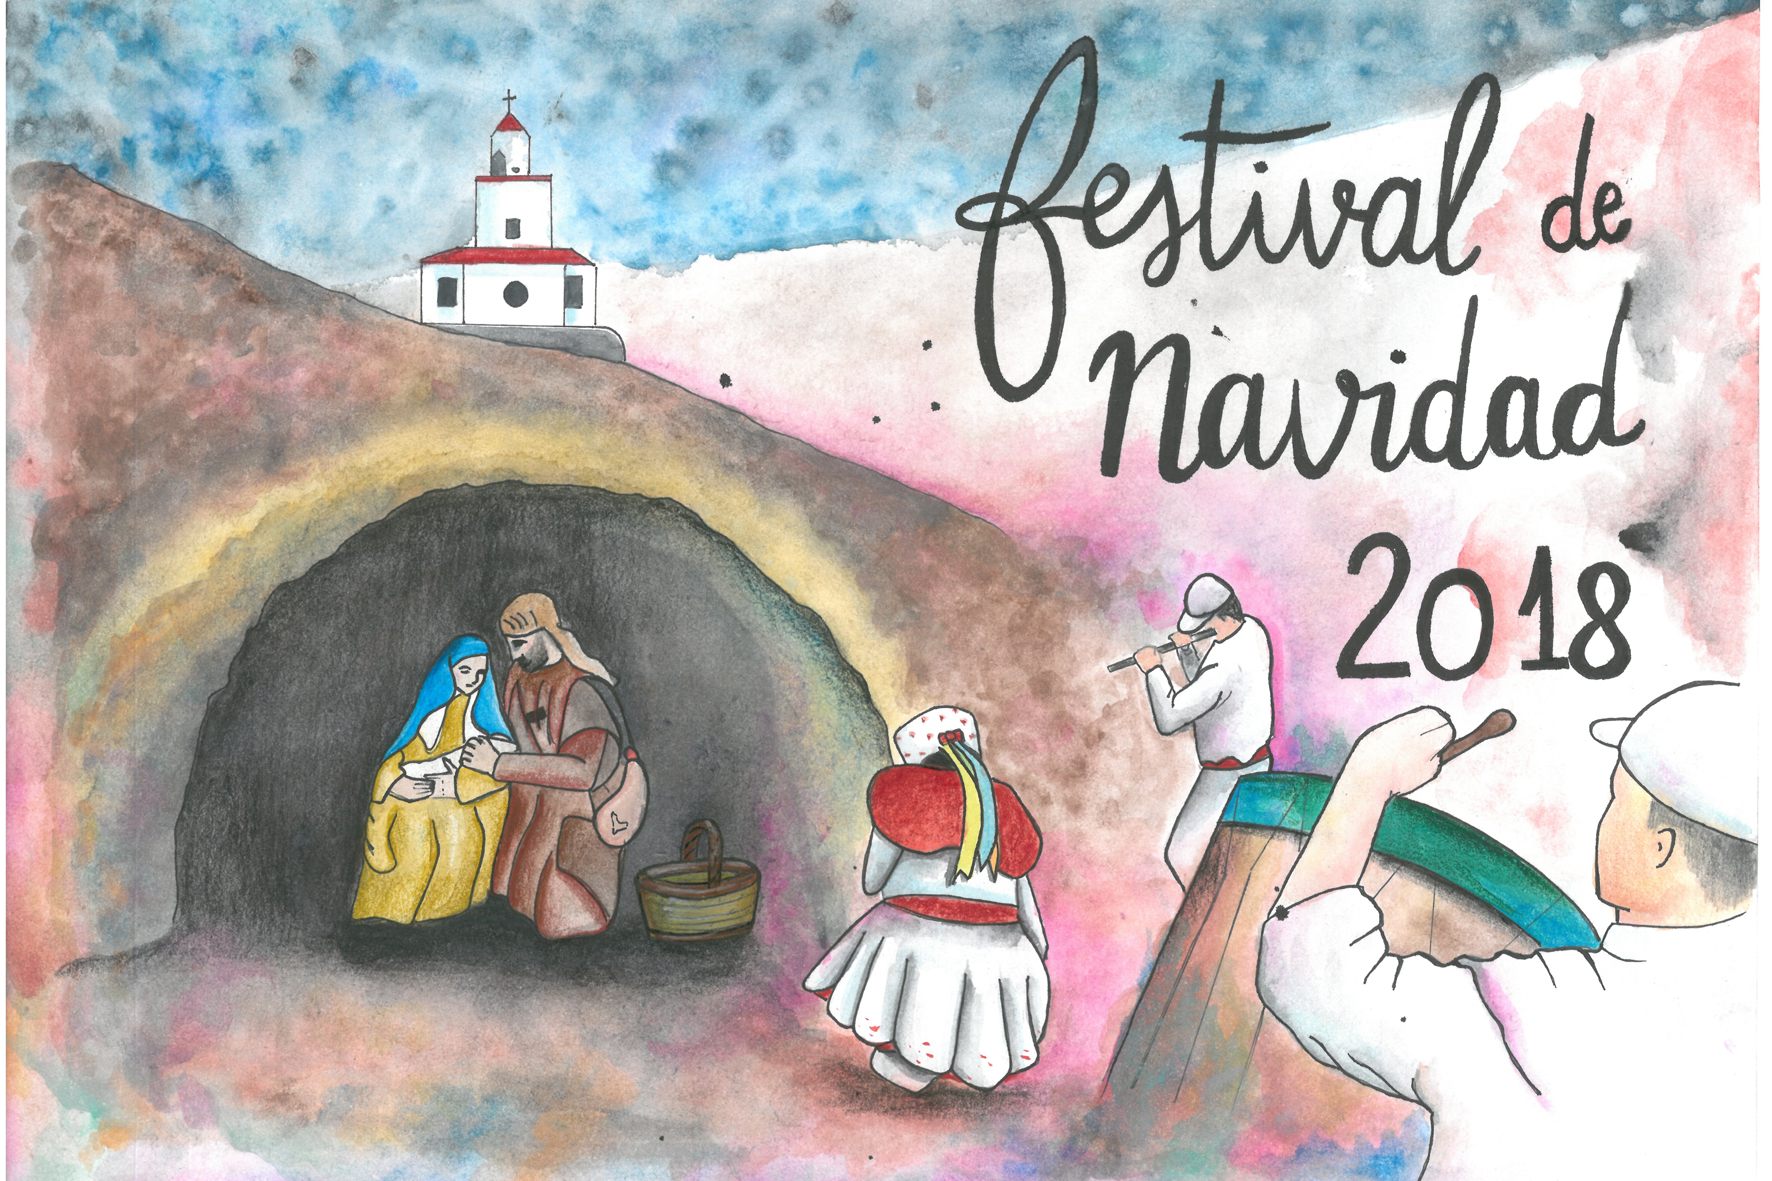 Ayelén Armas Fleitas ganadora del concurso del cartel de navidad 2018 de la Asociación cultural Amador